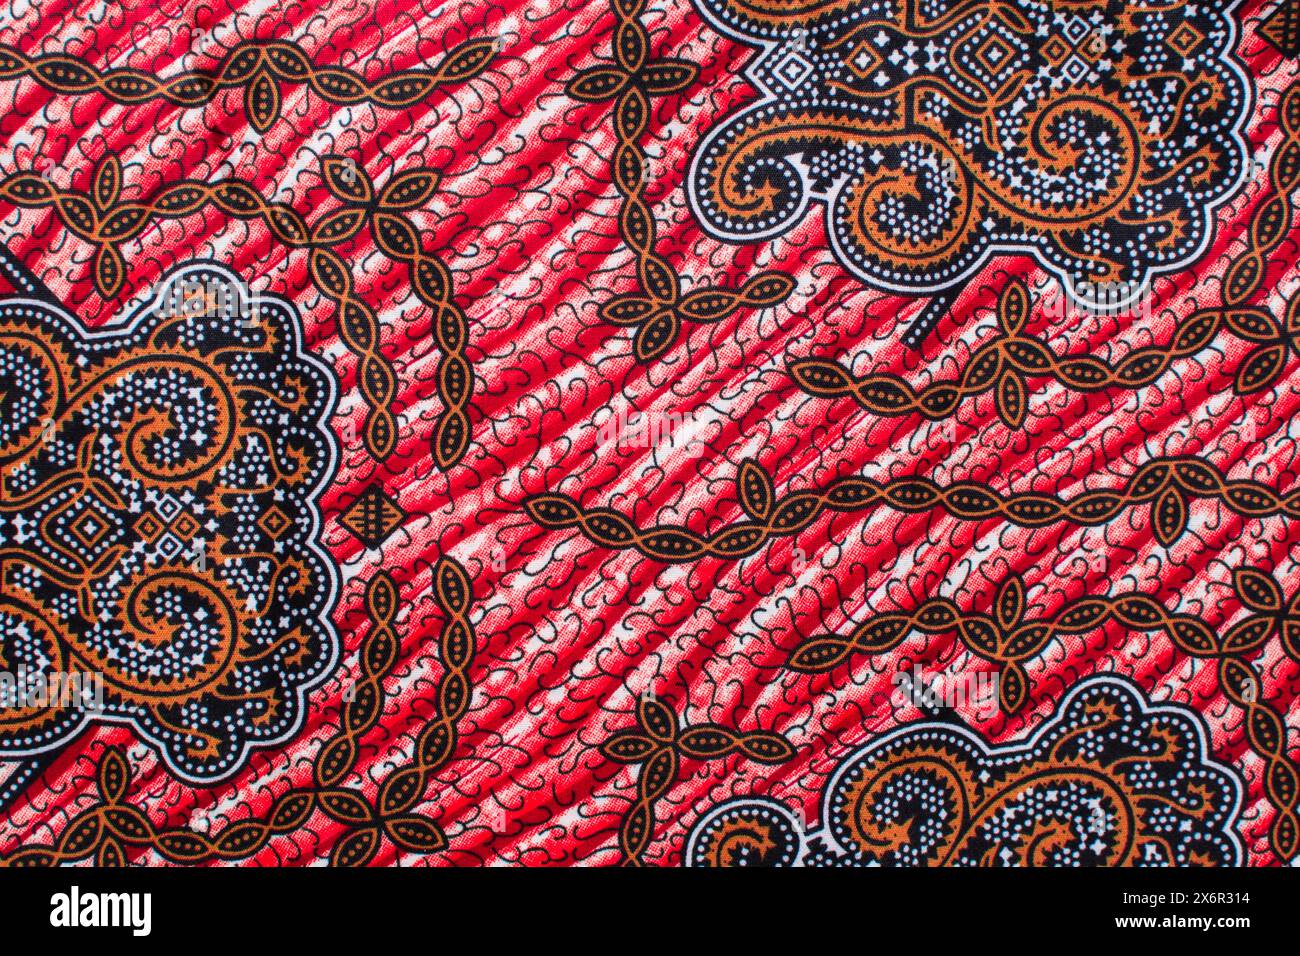 Draufsicht auf rot-gelben ankara-Stoff, flaches nigerianisches Wachstuch mit Motiven, ausgebreitetes rot-gelbes ankara-Material Stockfoto